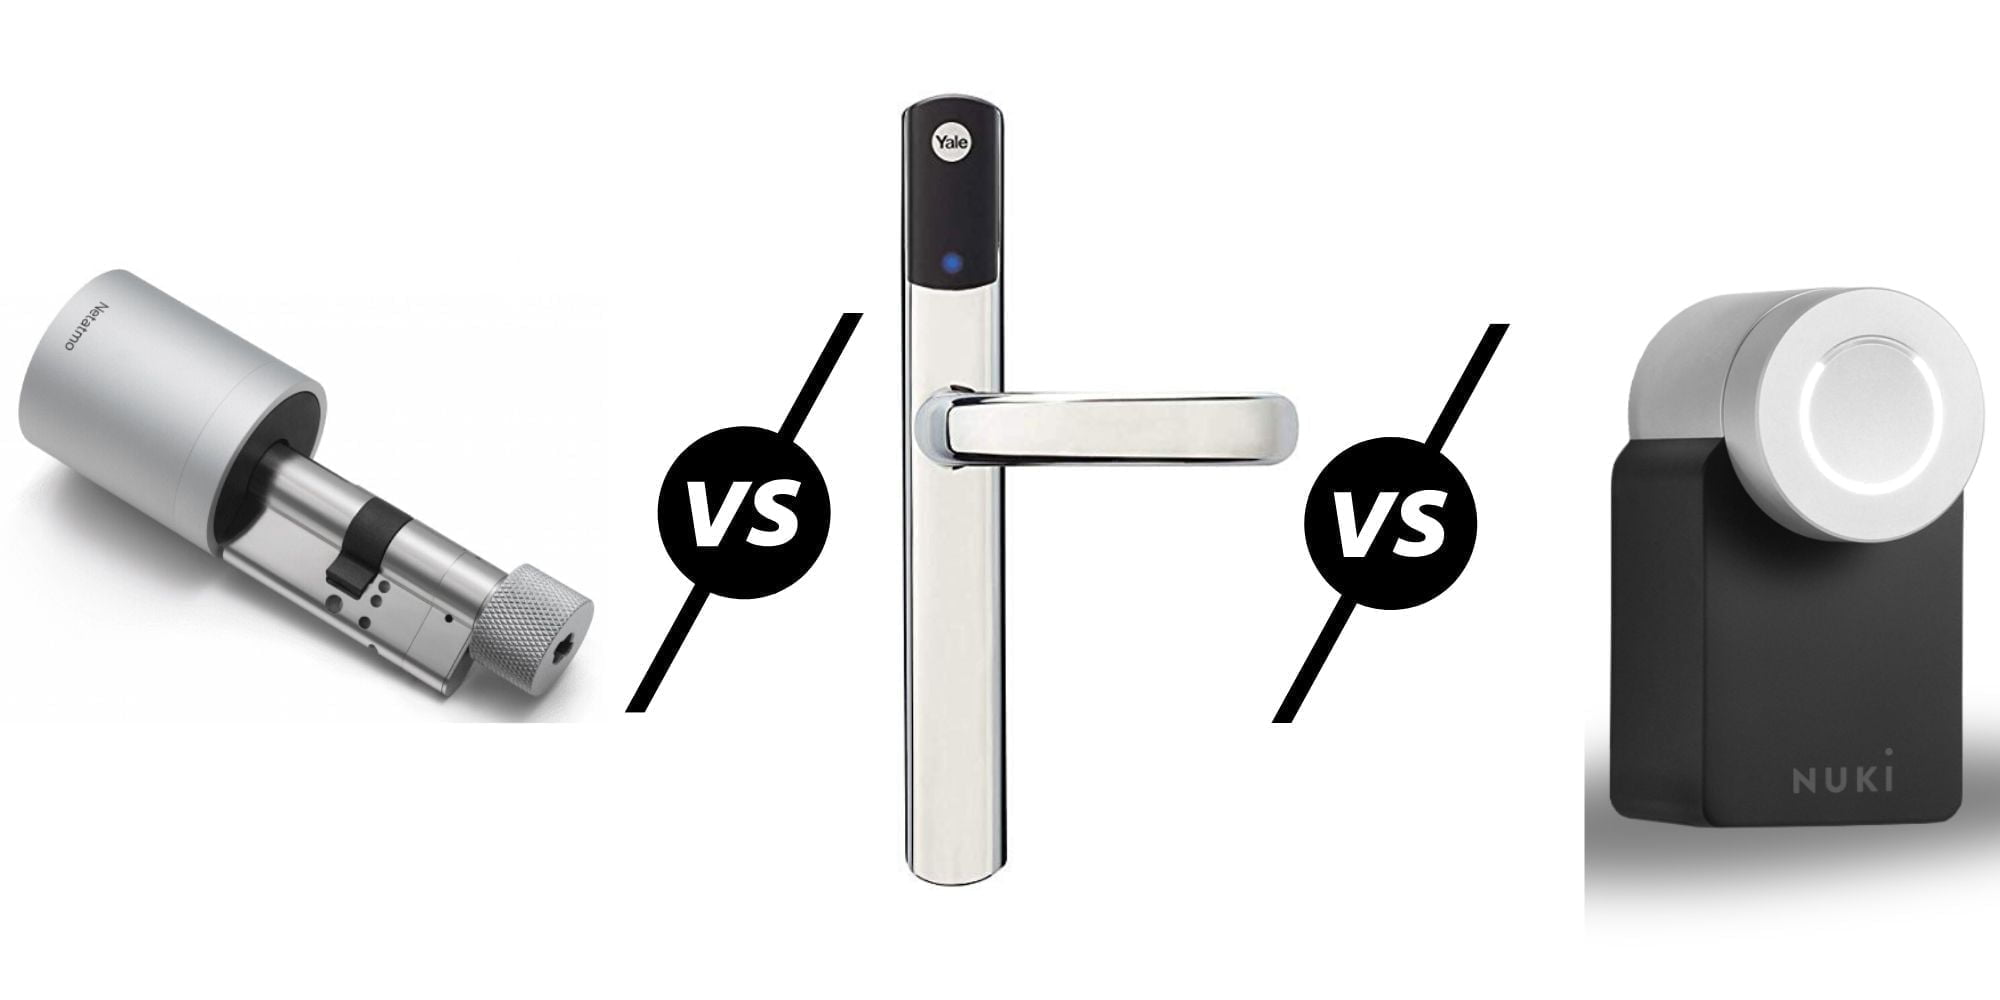 Netatmo Smart Door Lock vs Yale Conexis L1 vs Nuki Smart Lock 2.0 vs Danalock V3